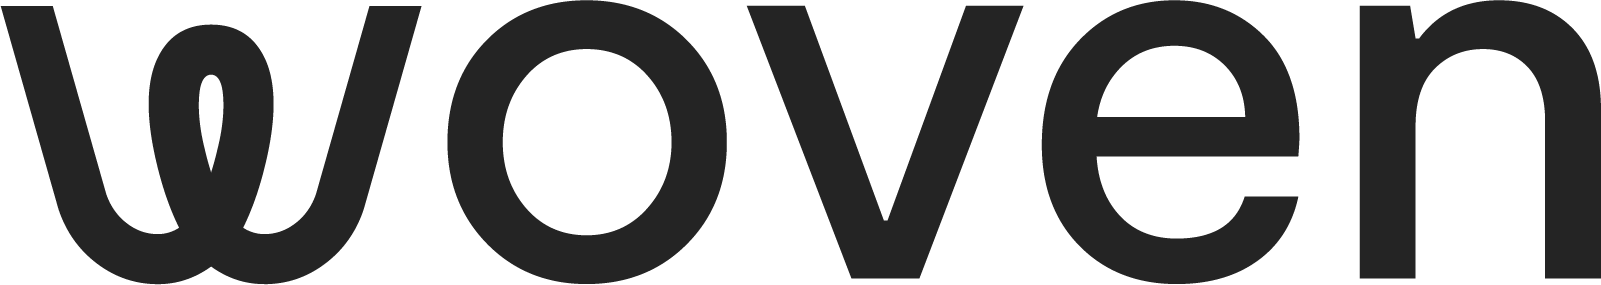 logo for Woven Films